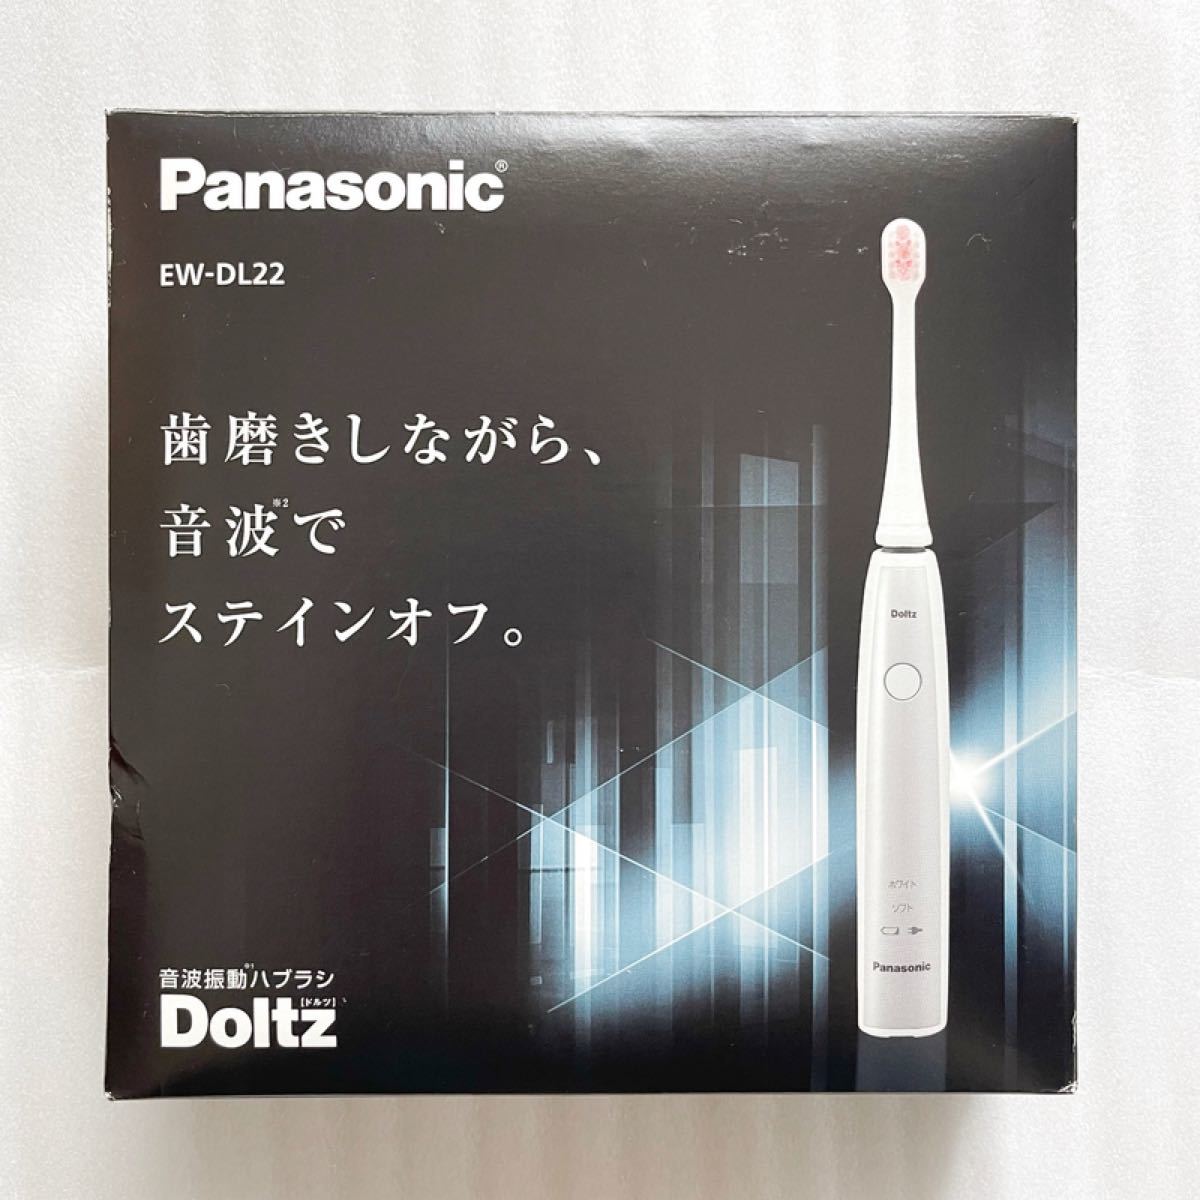 Panasonic パナソニック 音波振動ハブラシ ドルツ EW-DL22 替えブラシ付き